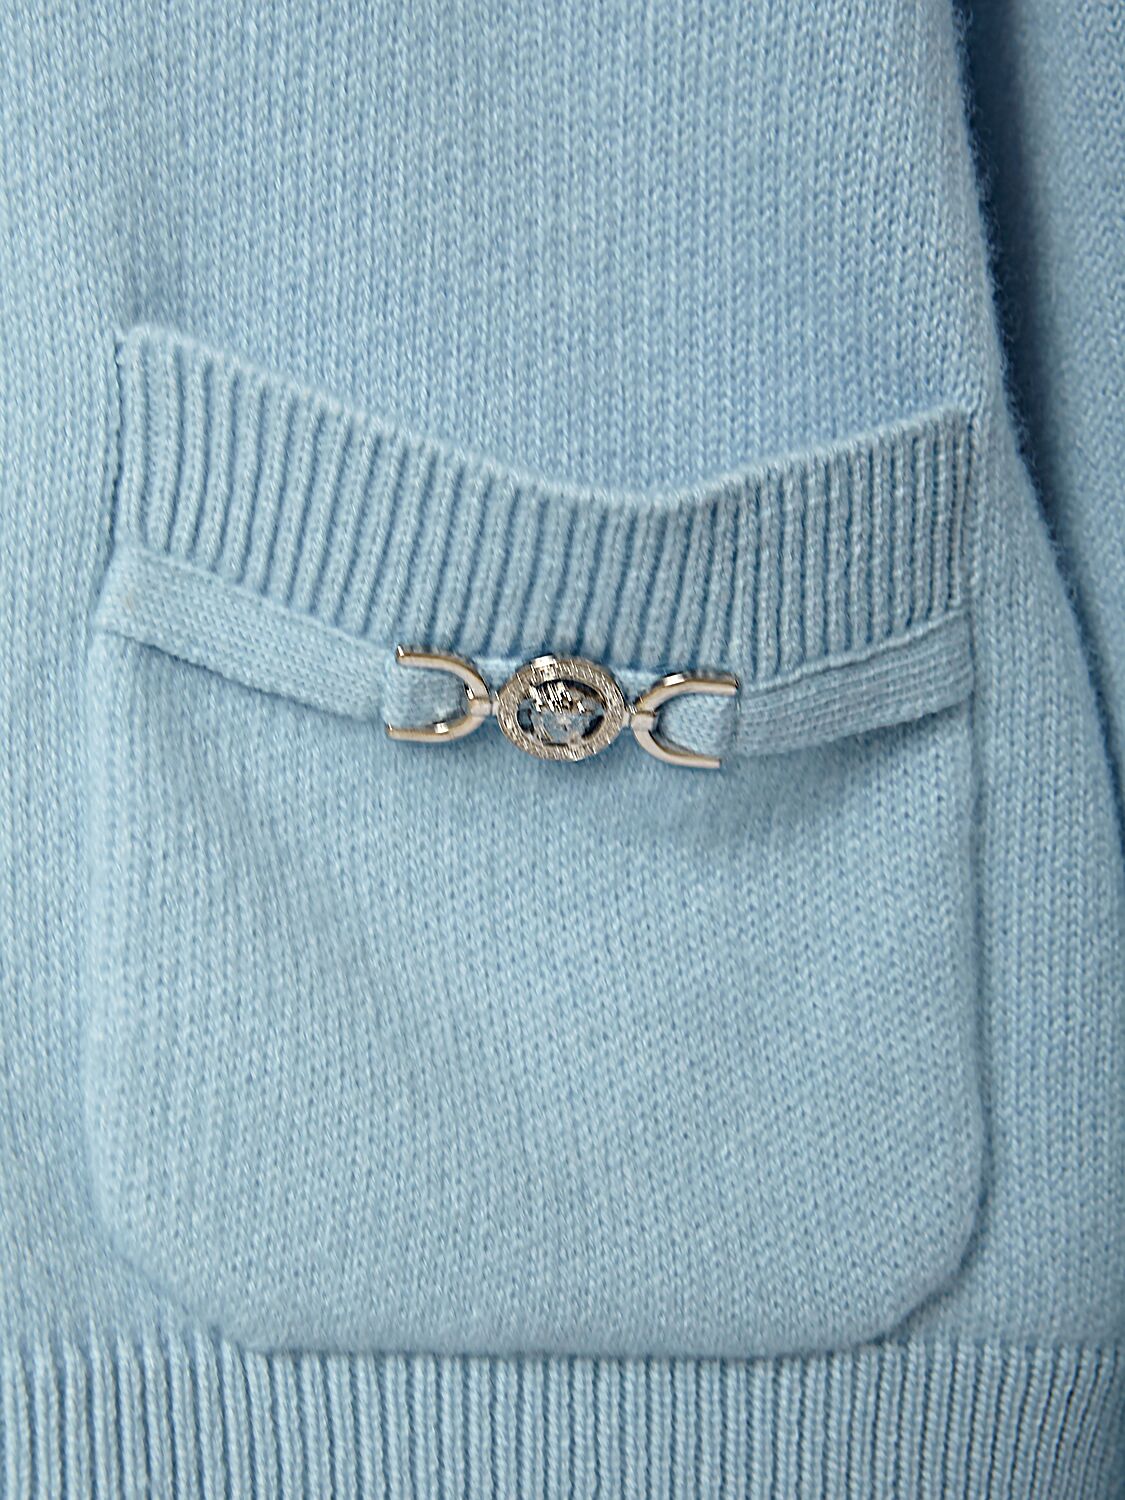 Shop Versace Embellished Cashmere Knit Cardigan In Light Blue